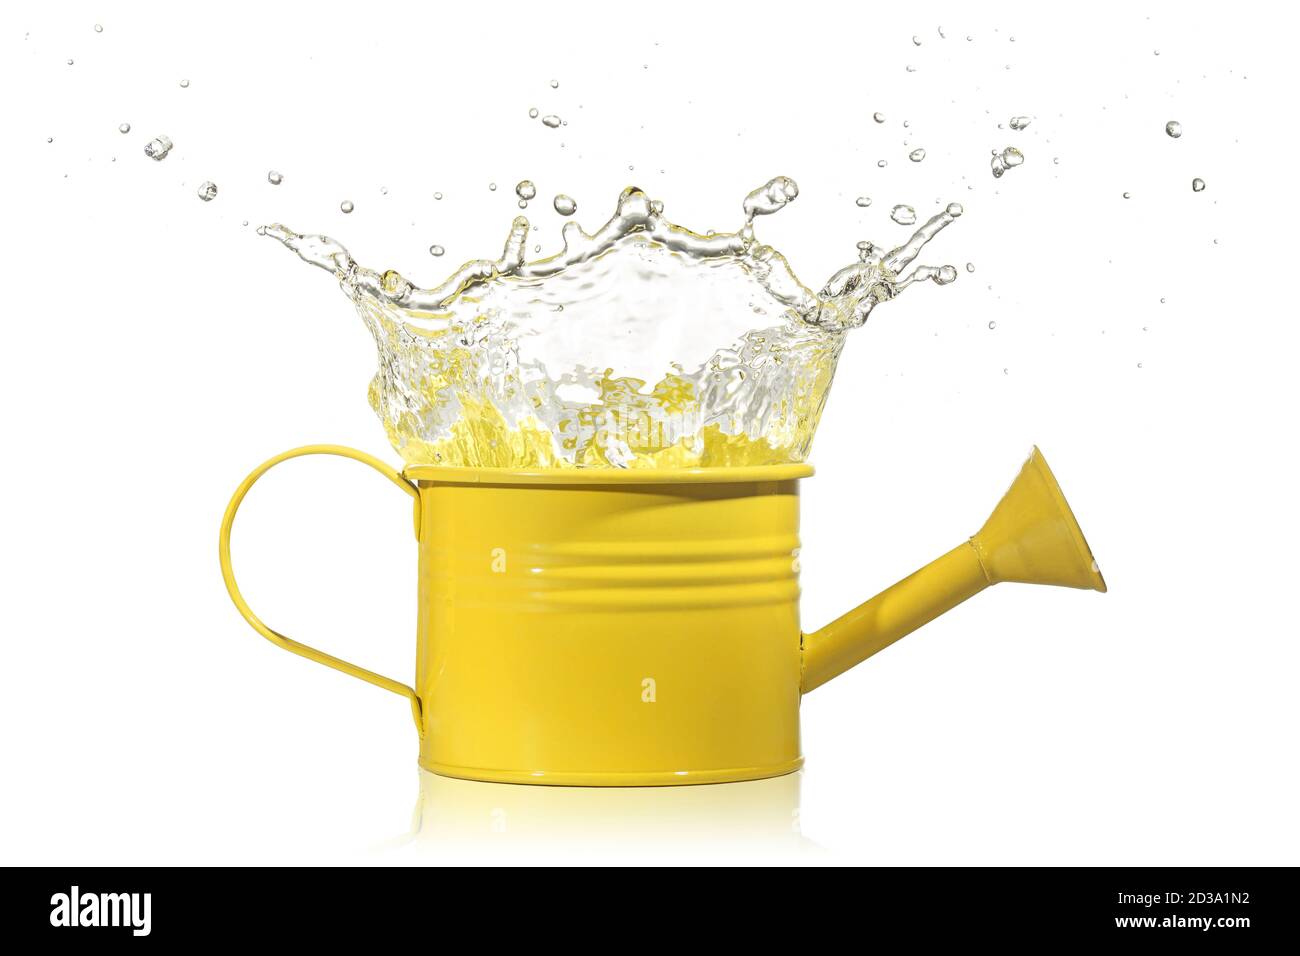 l'eau éclabousse d'un arrosoir jaune Banque D'Images